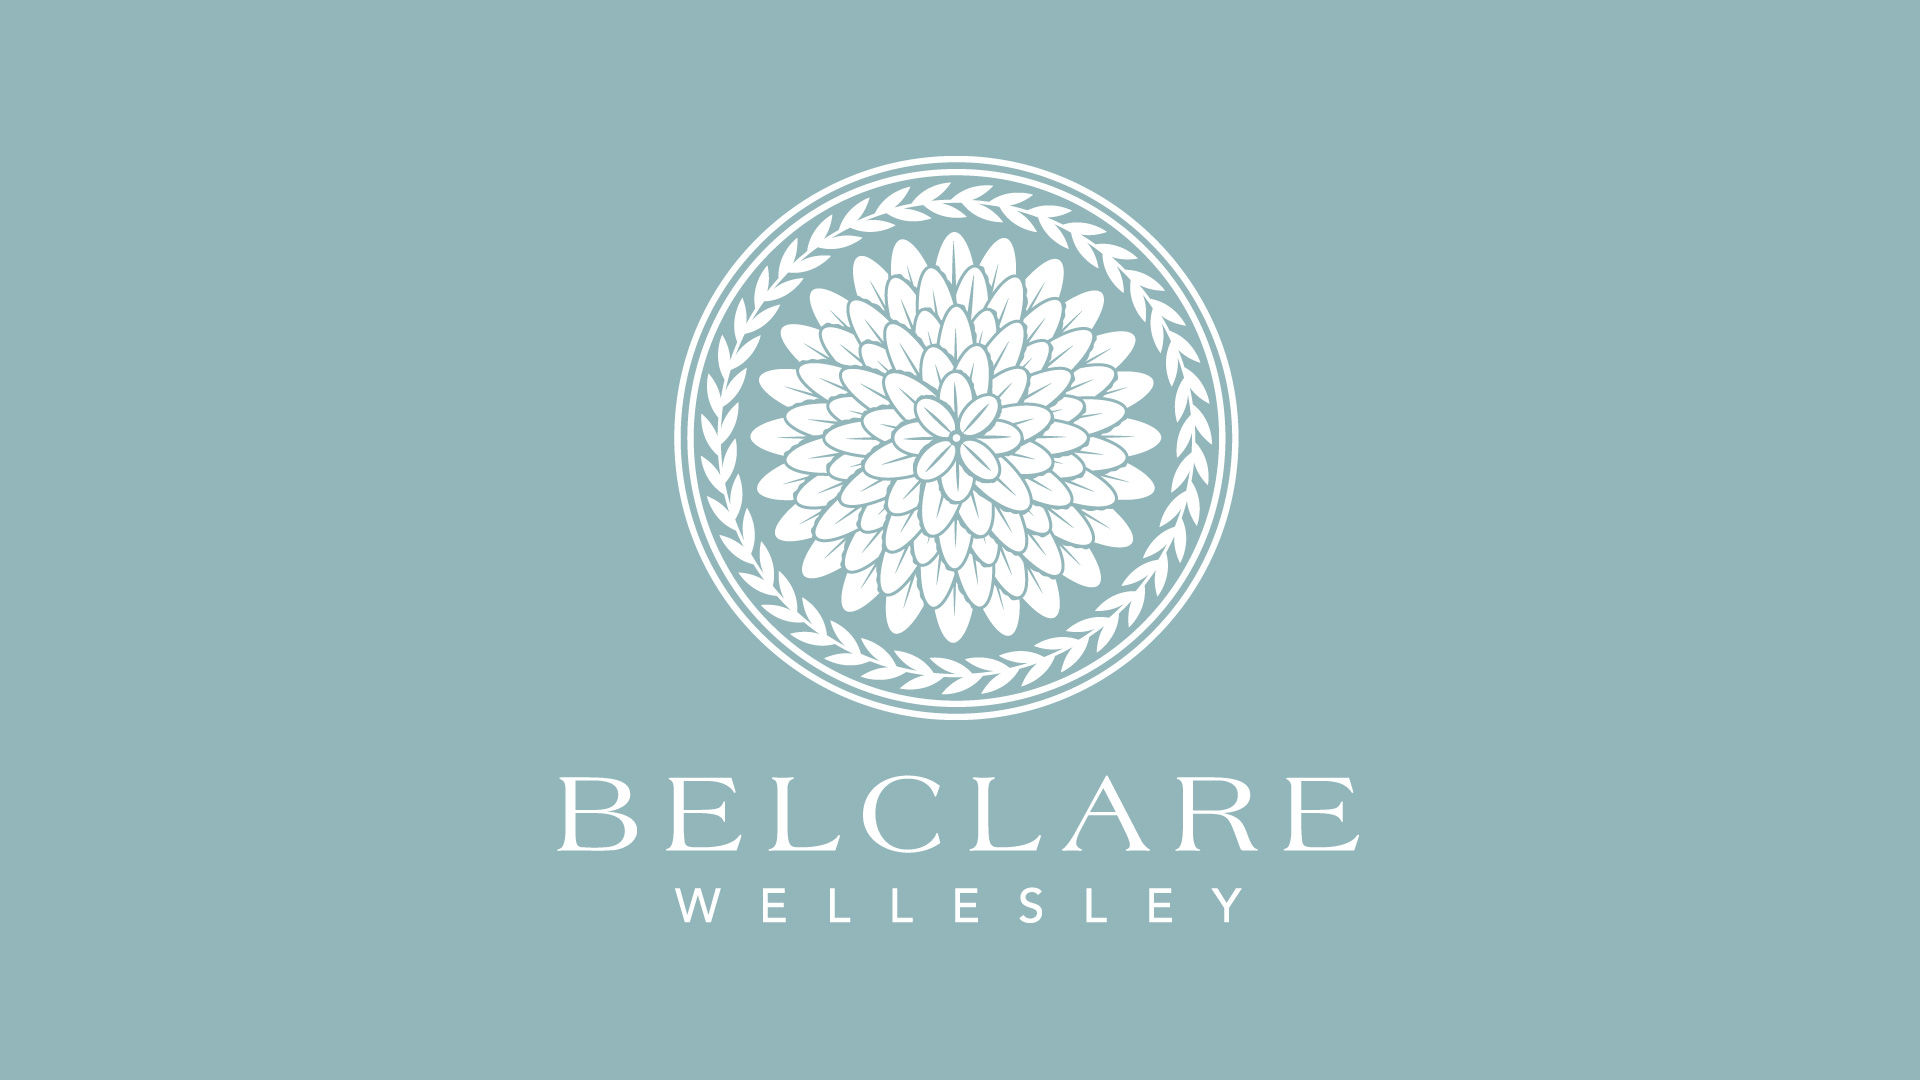 Belclare logo on blue background